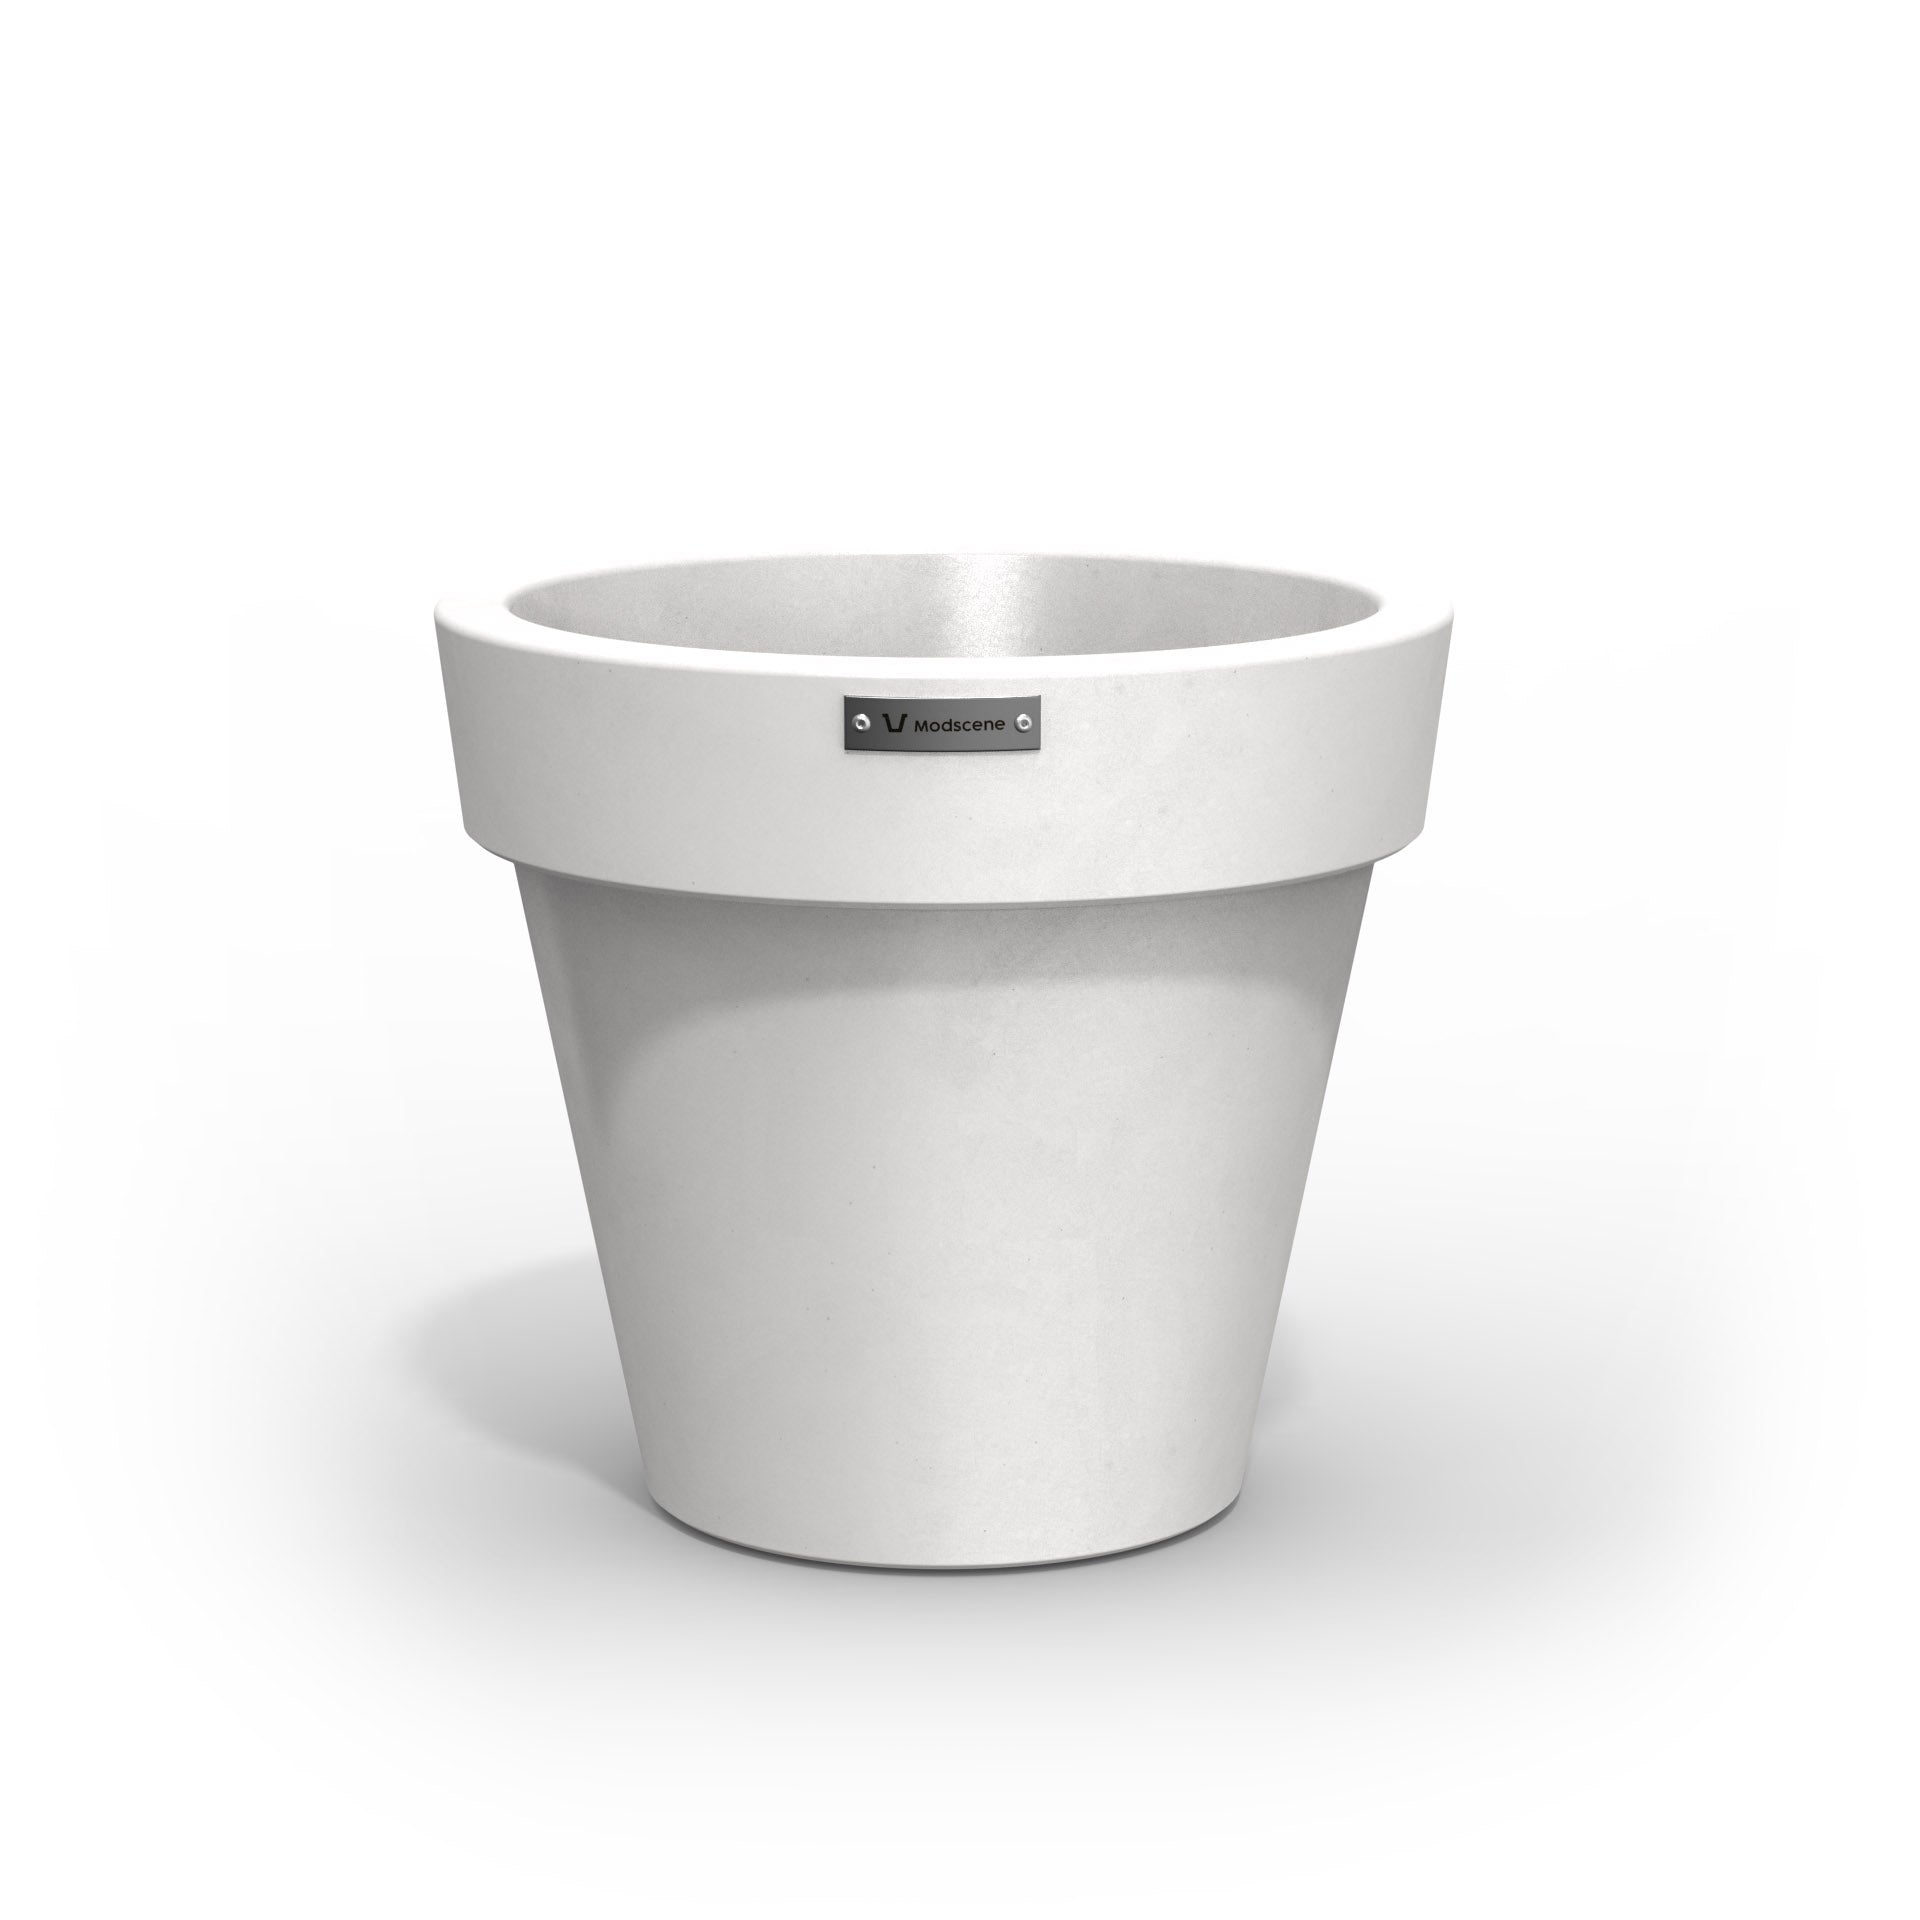 A small Modscene planter pot made in a matte white colour.